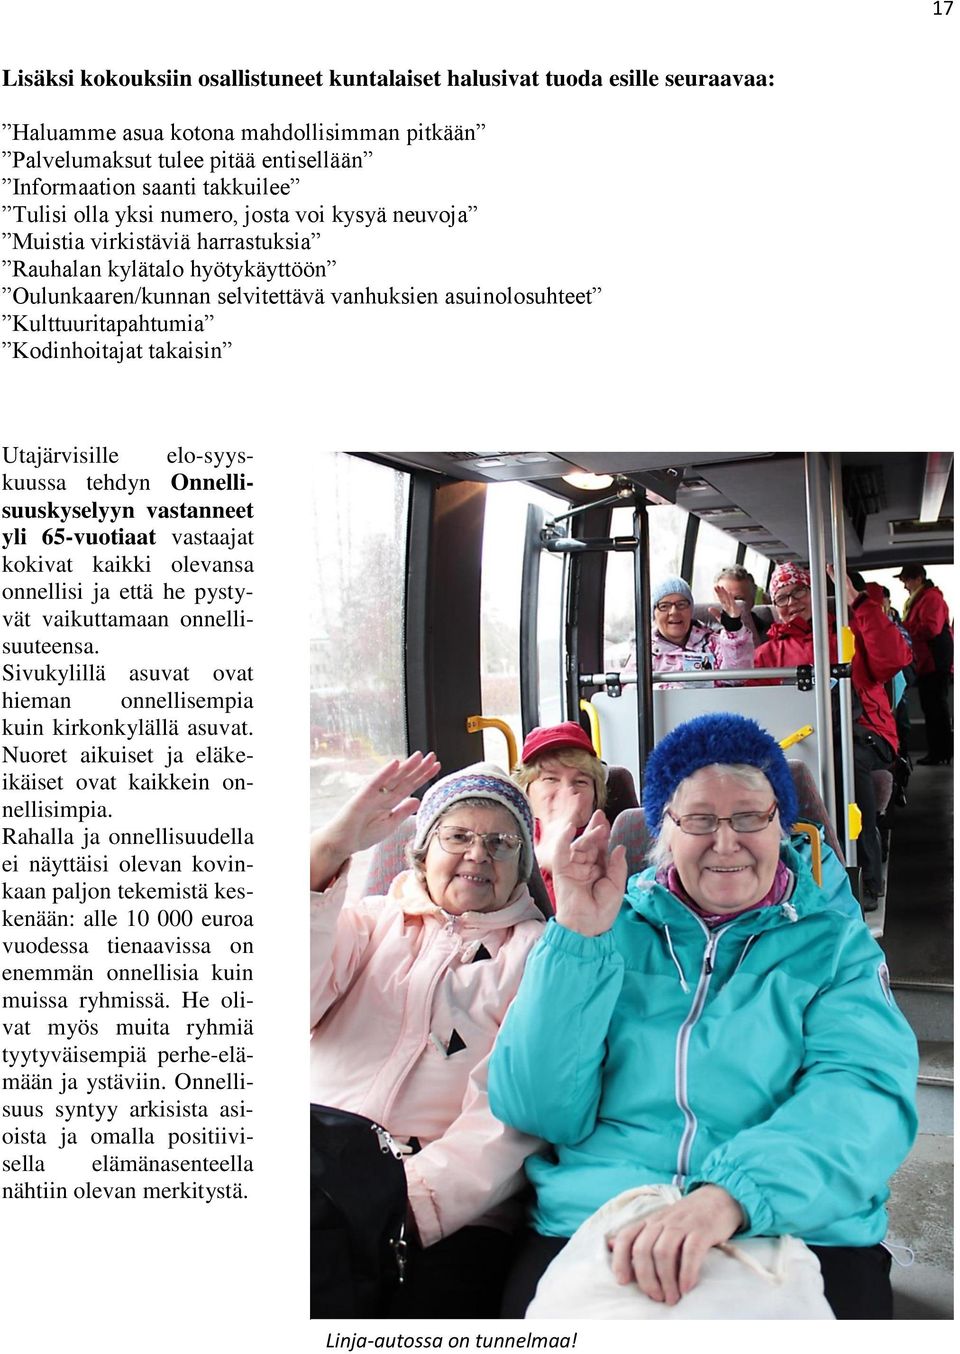 Kodinhoitajat takaisin Utajärvisille elo-syyskuussa tehdyn Onnellisuuskyselyyn vastanneet yli 65-vuotiaat vastaajat kokivat kaikki olevansa onnellisi ja että he pystyvät vaikuttamaan onnellisuuteensa.